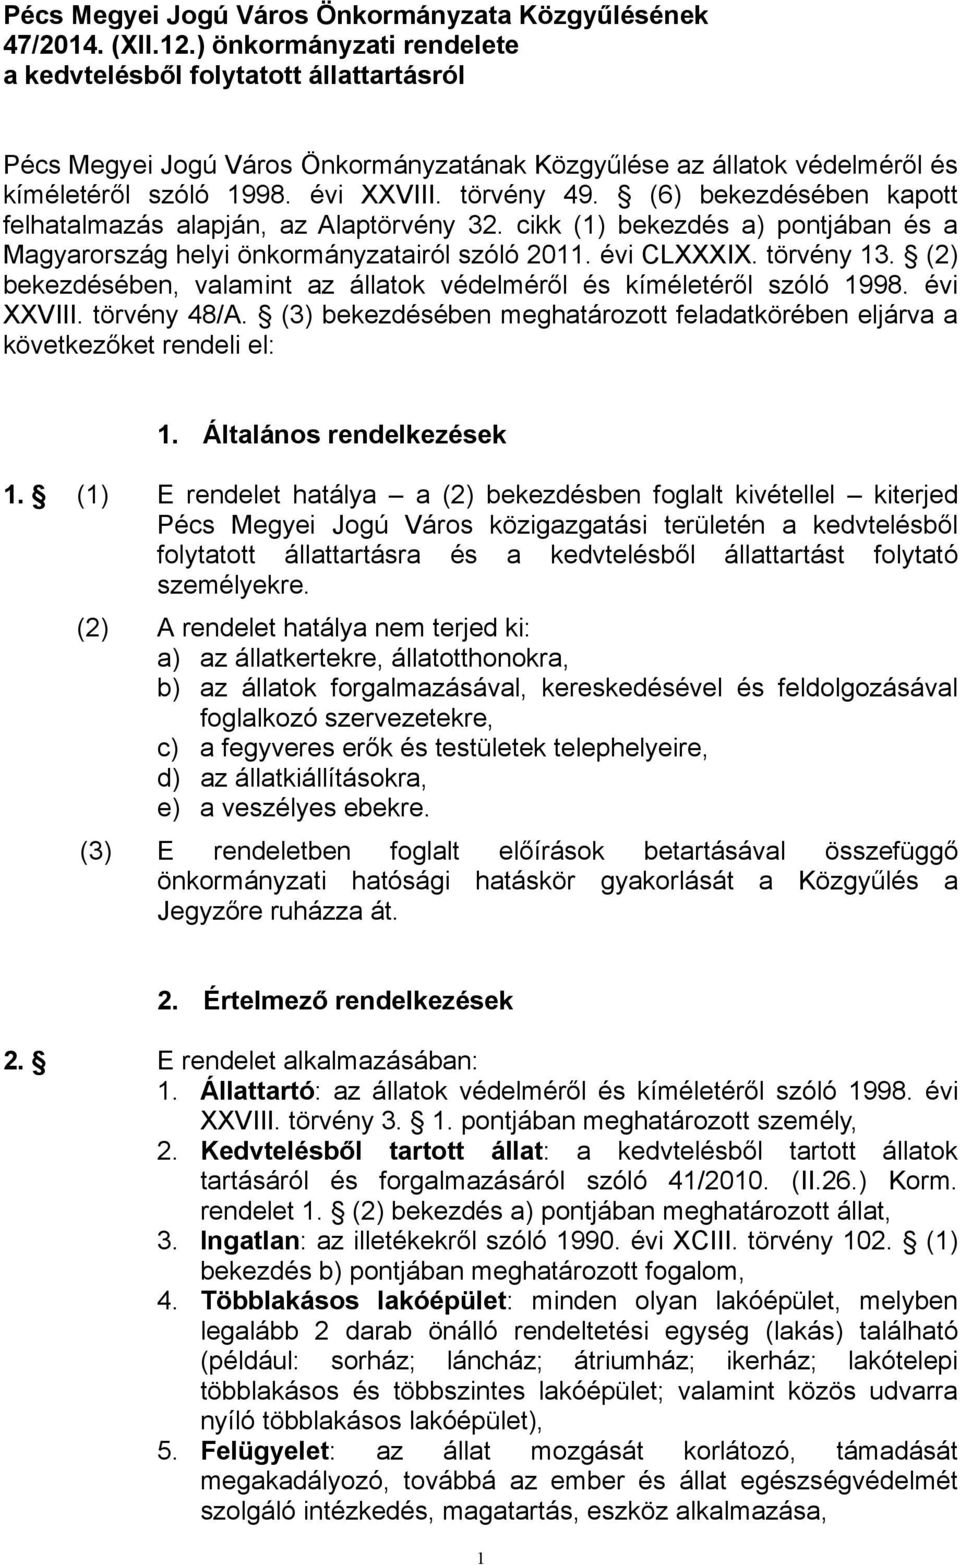 (6) bekezdésében kapott felhatalmazás alapján, az Alaptörvény 32. cikk (1) bekezdés a) pontjában és a Magyarország helyi önkormányzatairól szóló 2011. évi CLXXXIX. törvény 13.